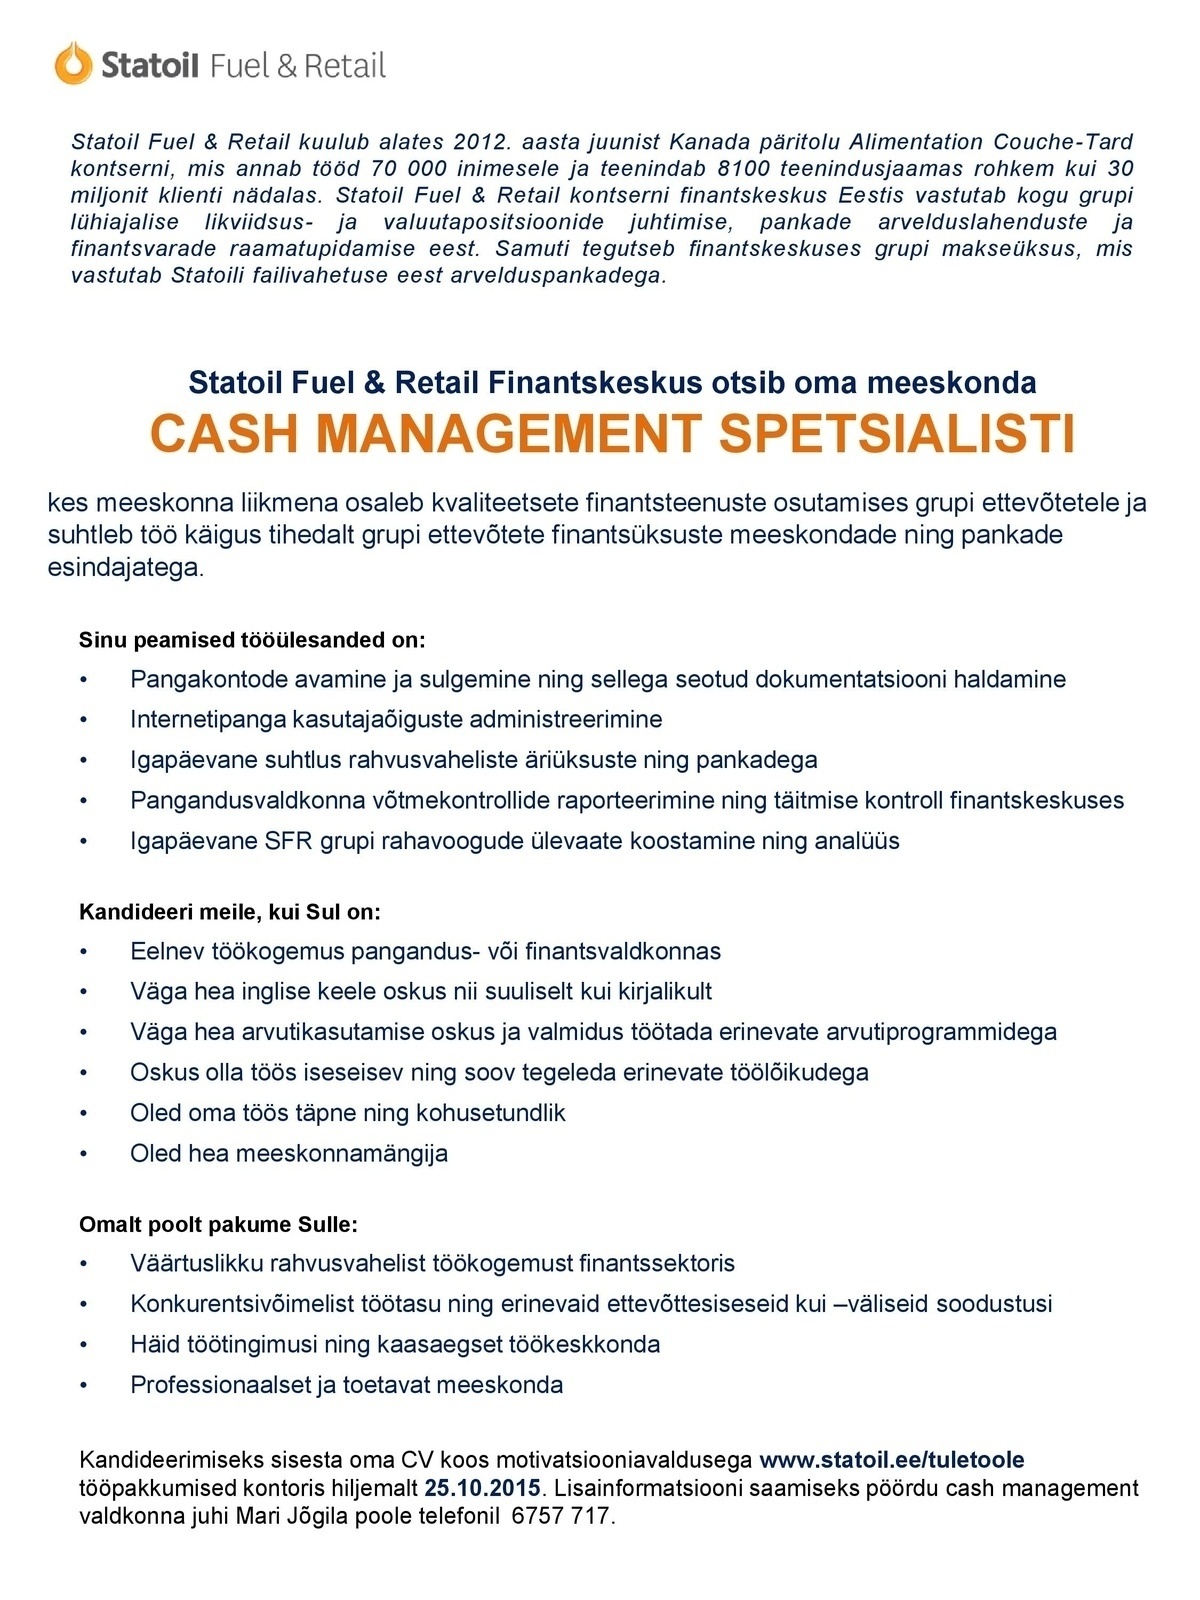 Statoil Fuel & Retail AS Cash management spetsialist